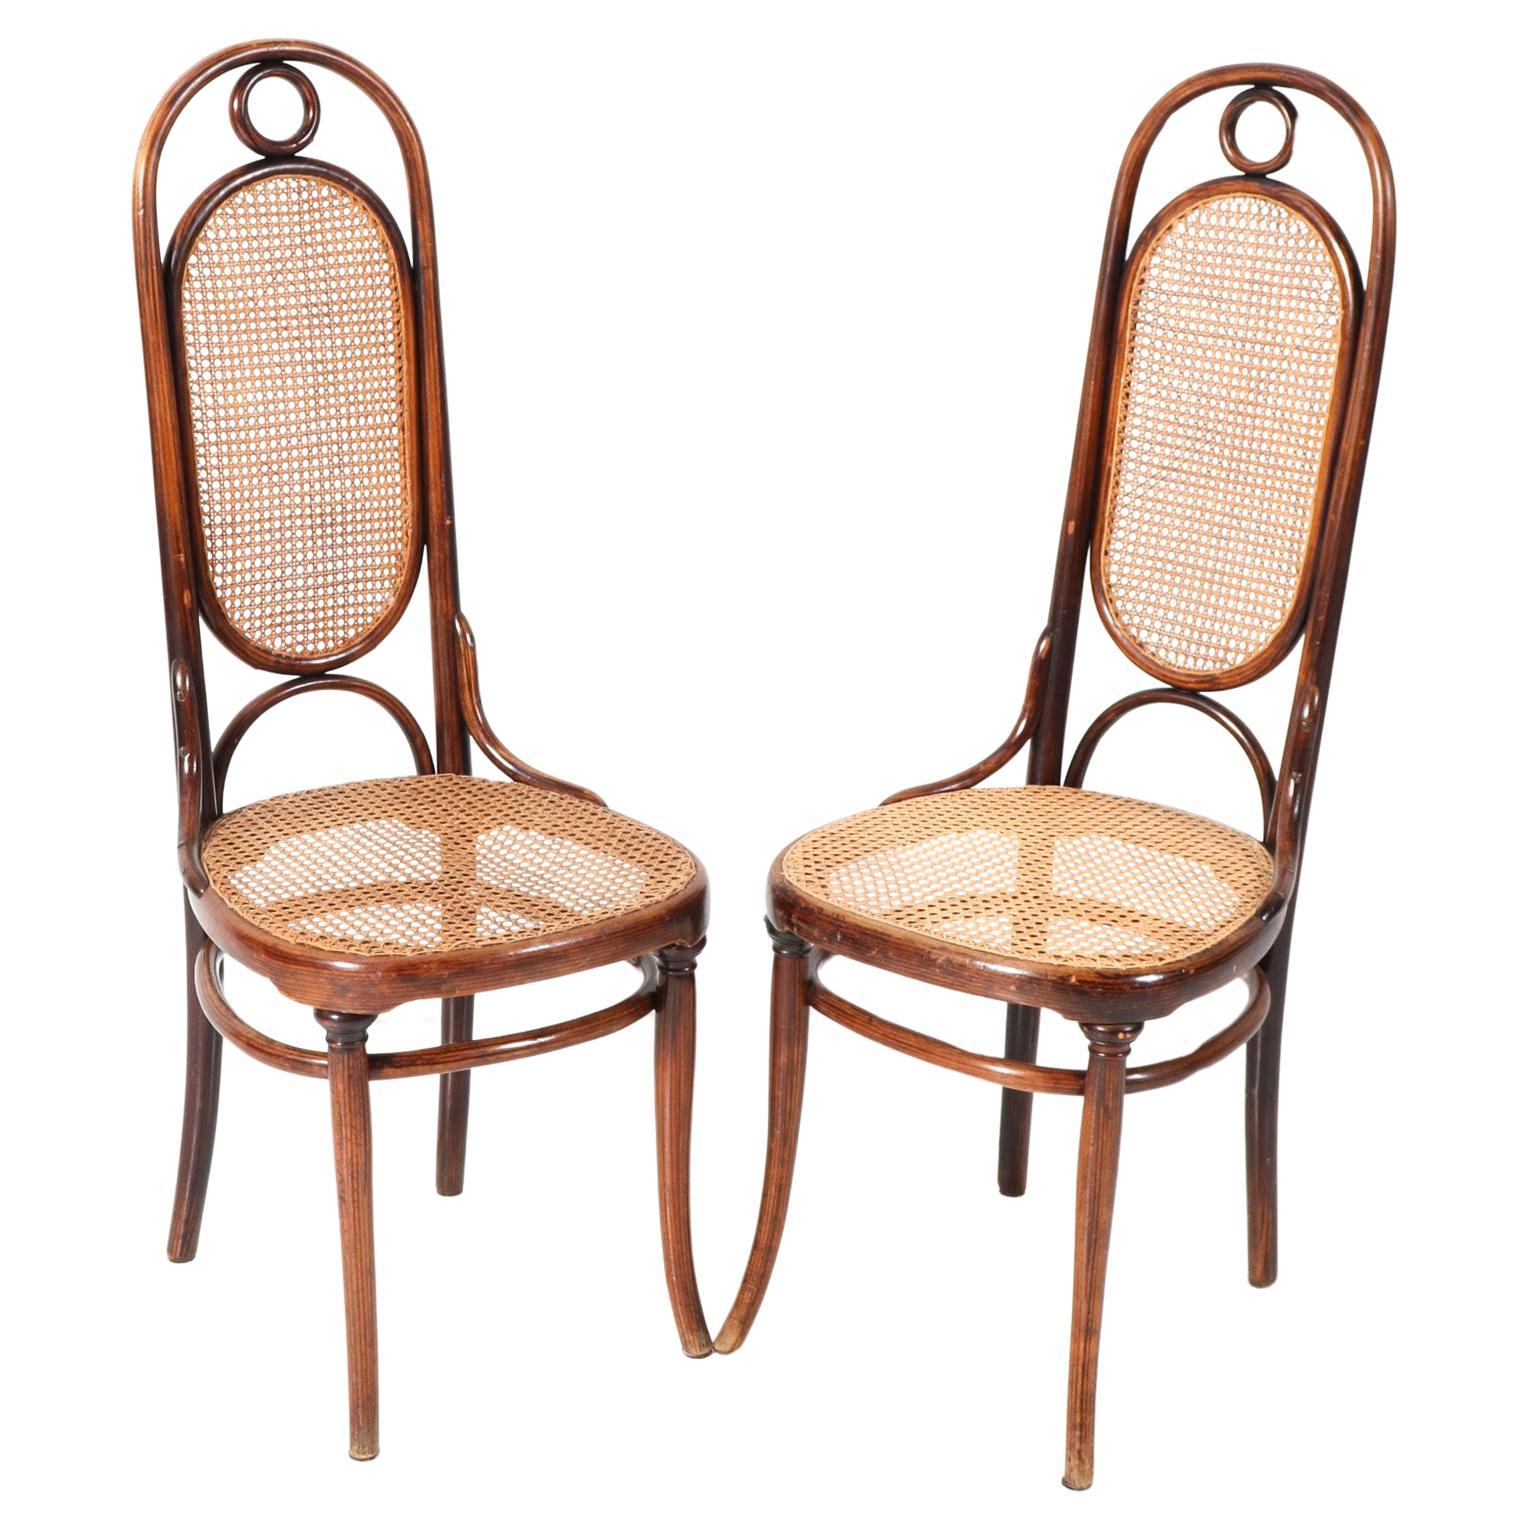 Paire de chaises Art Nouveau à haut dossier en hêtre modèle 17 de Michael Thonet, années 1890